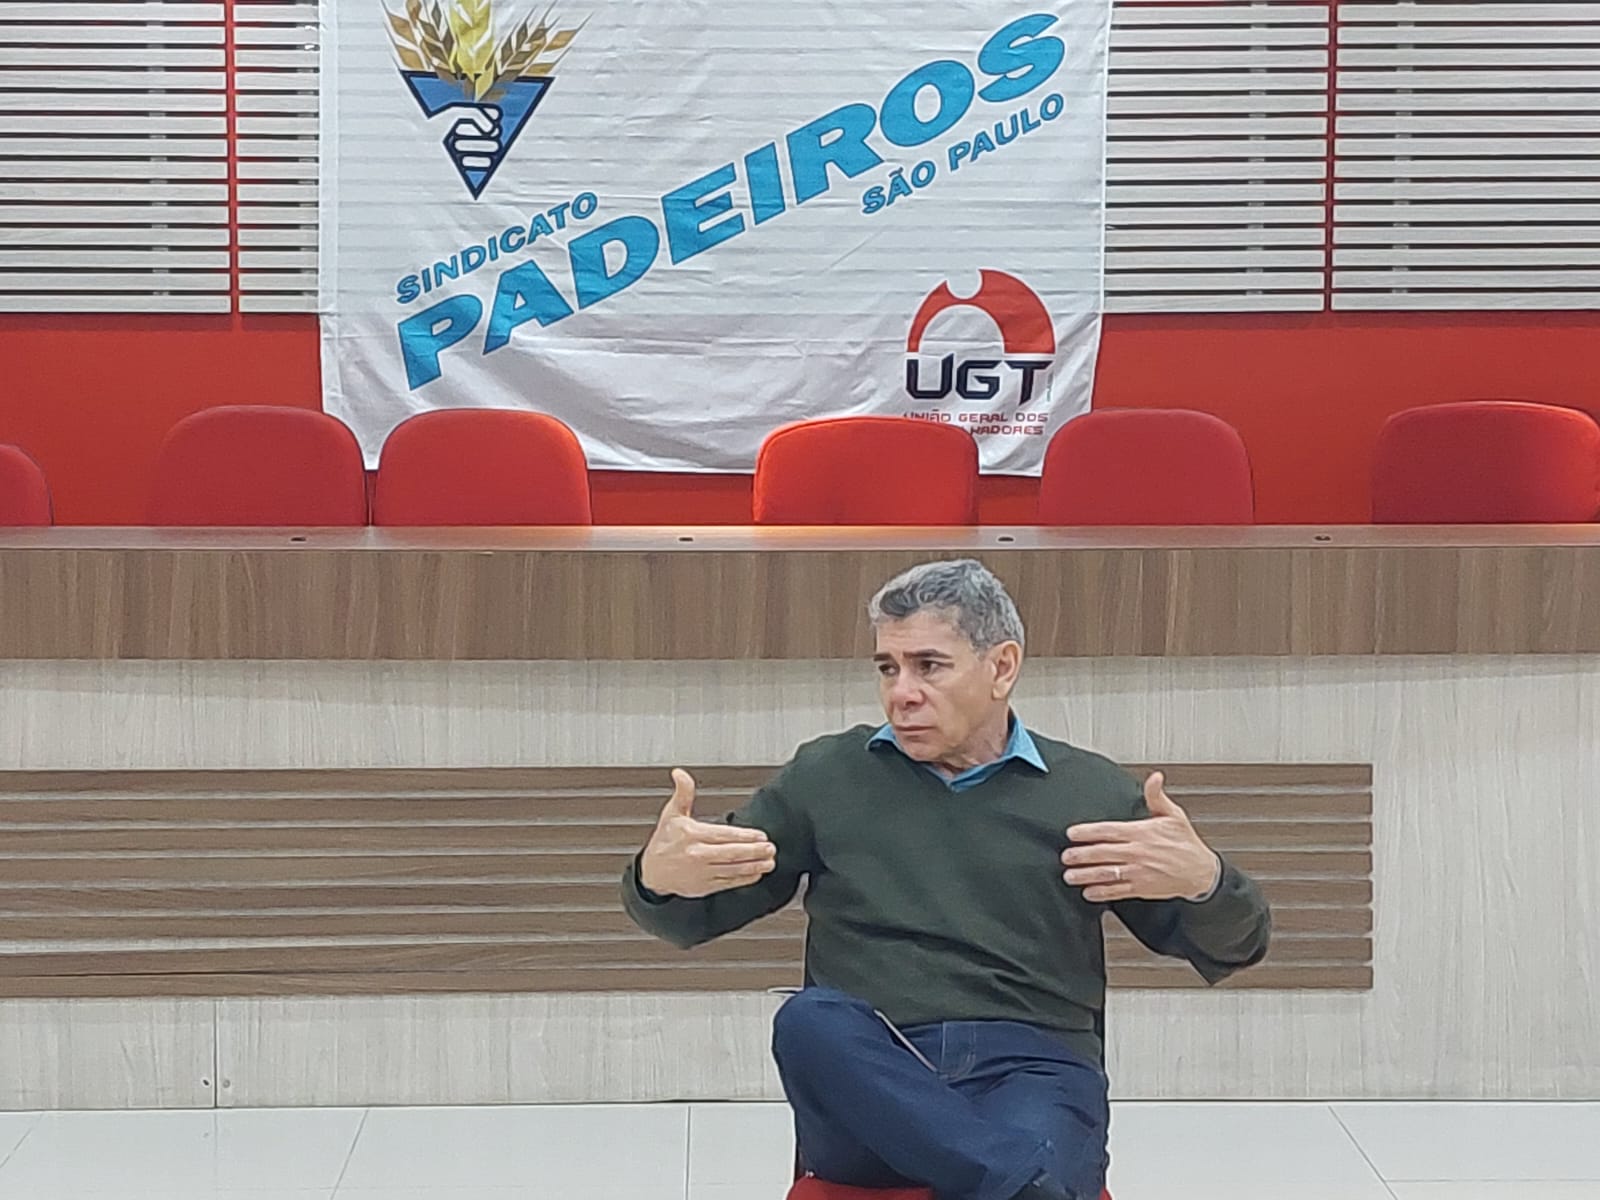 Padeiros de São Paulo: Chiquinho Pereira, presidente da entidade